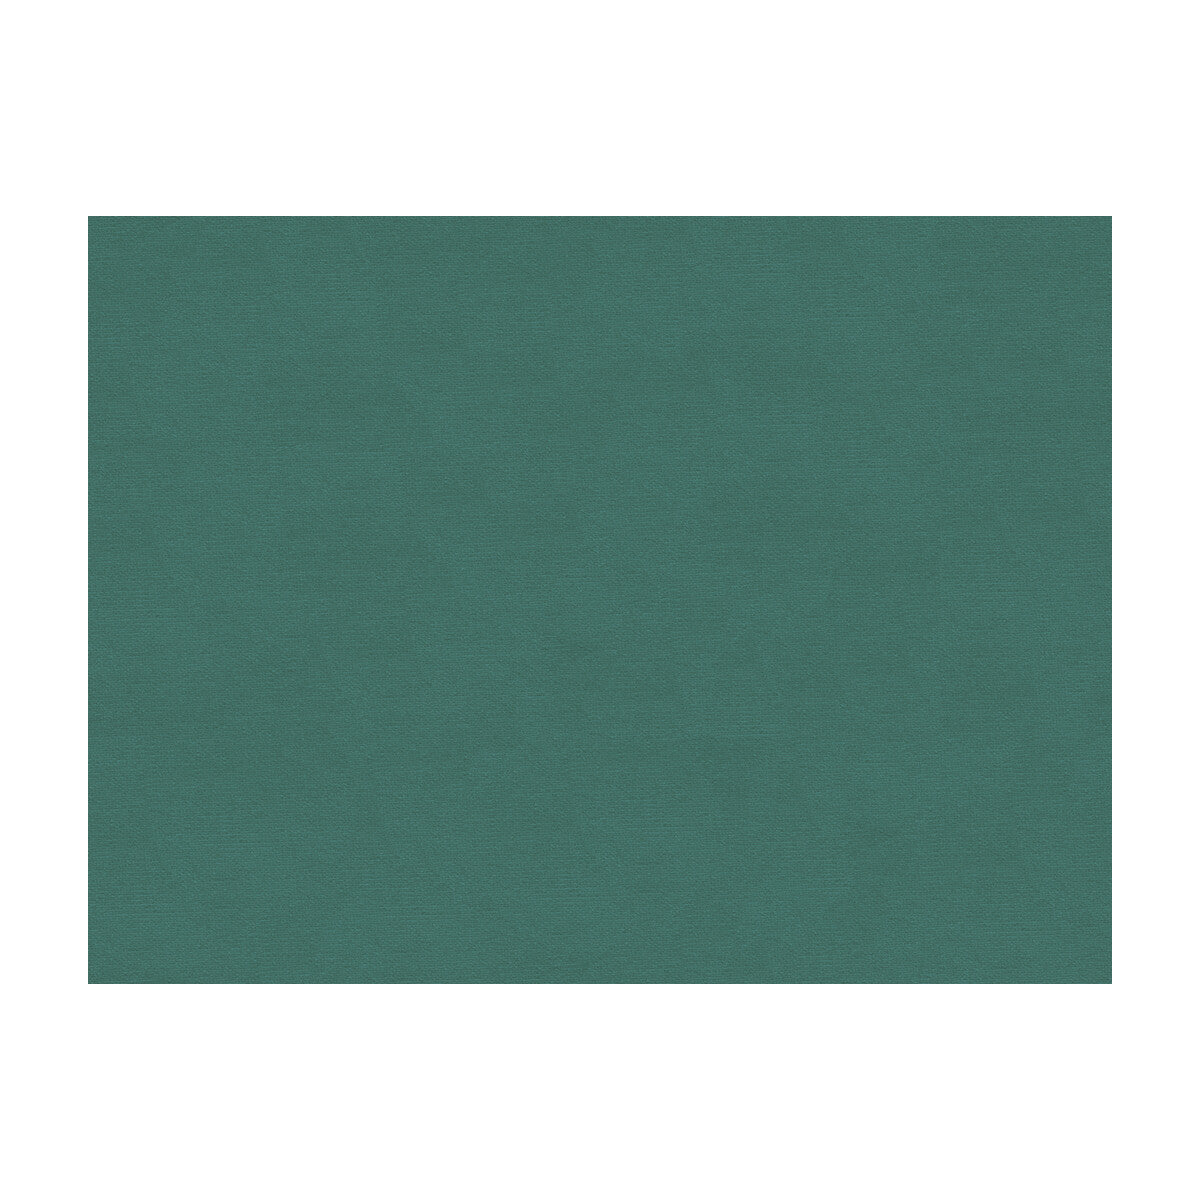 Lubeck Cotton Velvet fabric in cadet color - pattern BR-89779.246.0 - by Brunschwig &amp; Fils